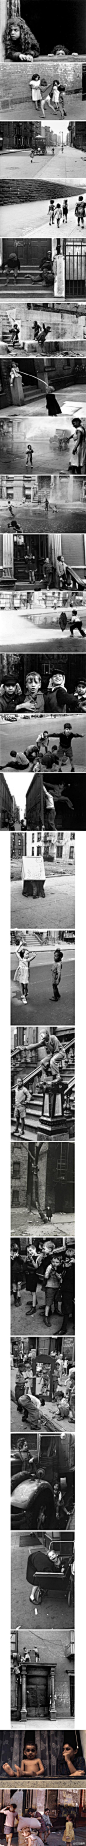 李维LeviTong：哈，谢谢！大爱啊。推荐一下她的精选画册，2008年出版的。除了这些为人熟知的黑白照片，里面还有很多珍贵的纽约街头彩照。她是最早一批获得Guggenheim资助使用彩色胶片的摄影师，不过照片居然被盗了，老天总爱开这样的玩笑，那些街头拍摄有的非常有趣，推荐